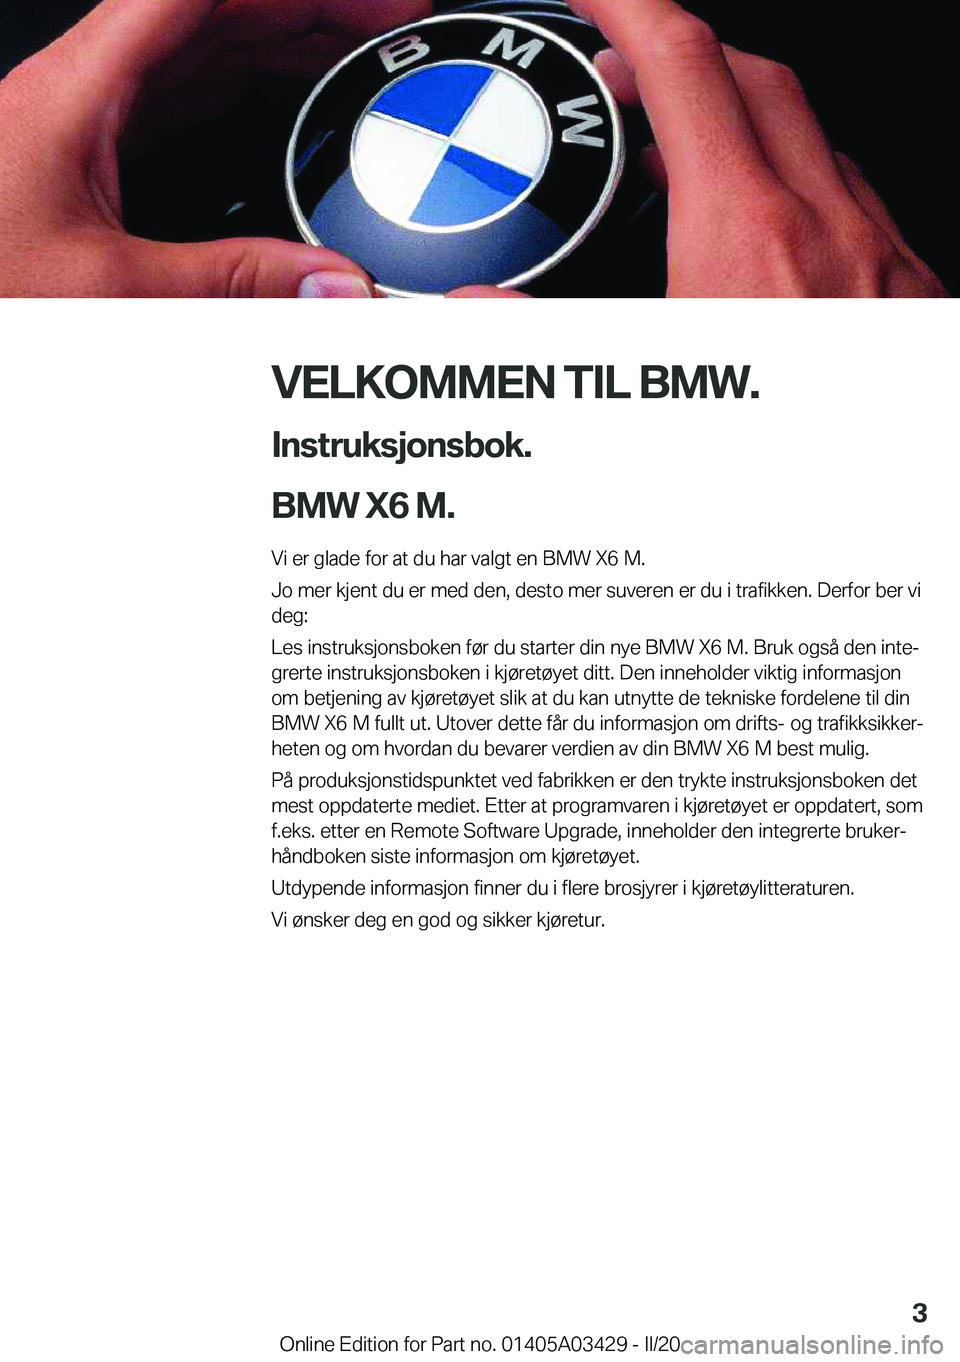 BMW X6 M 2020  InstruksjonsbØker (in Norwegian) �V�E�L�K�O�M�M�E�N��T�I�L��B�M�W�.�I�n�s�t�r�u�k�s�j�o�n�s�b�o�k�.
�B�M�W��X�6��M�.
�V�i��e�r��g�l�a�d�e��f�o�r��a�t��d�u��h�a�r��v�a�l�g�t��e�n��B�M�W��X�6��M�. �J�o��m�e�r��k�j�e�n�